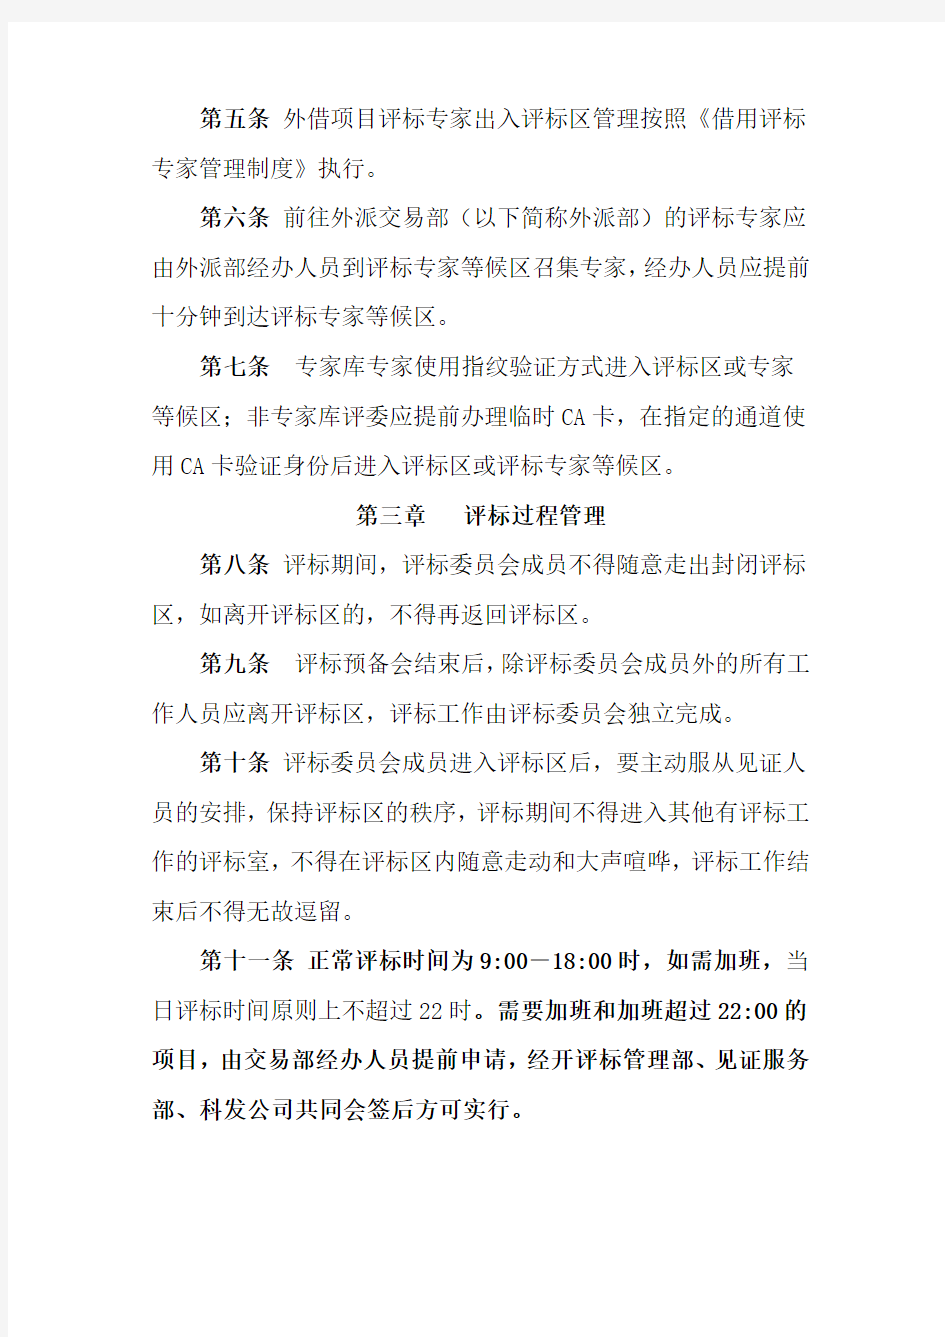 (完整版)广州建设工程交易中心评标区管理制度